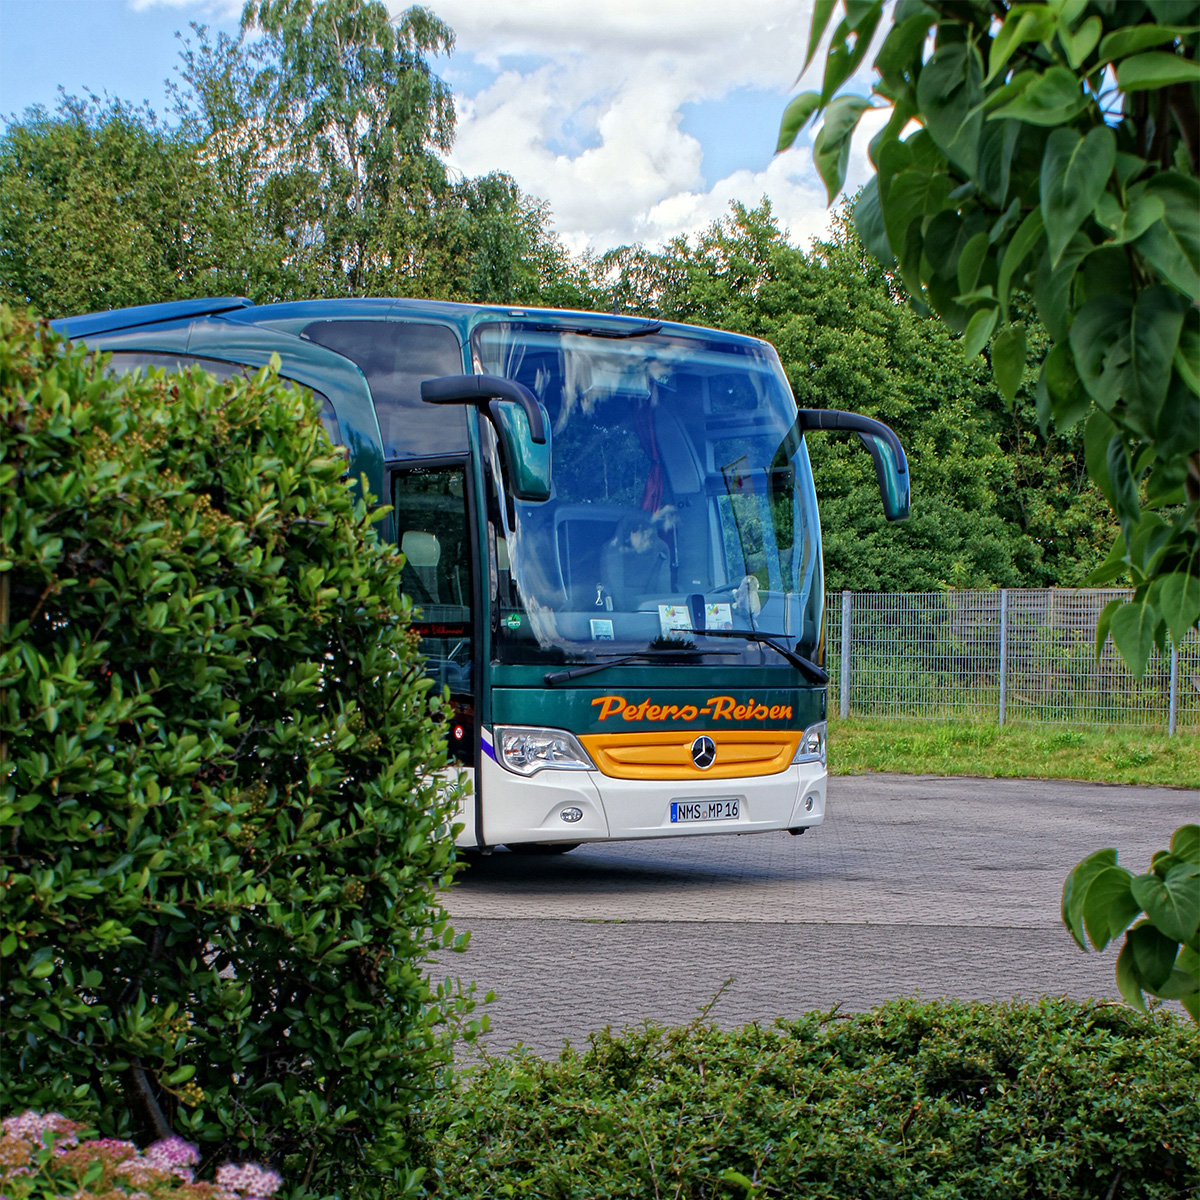 4 Sterne Peters-Bus - Tourismo (14m), 52 Sitzplätze (80 cm Sitzabstand)